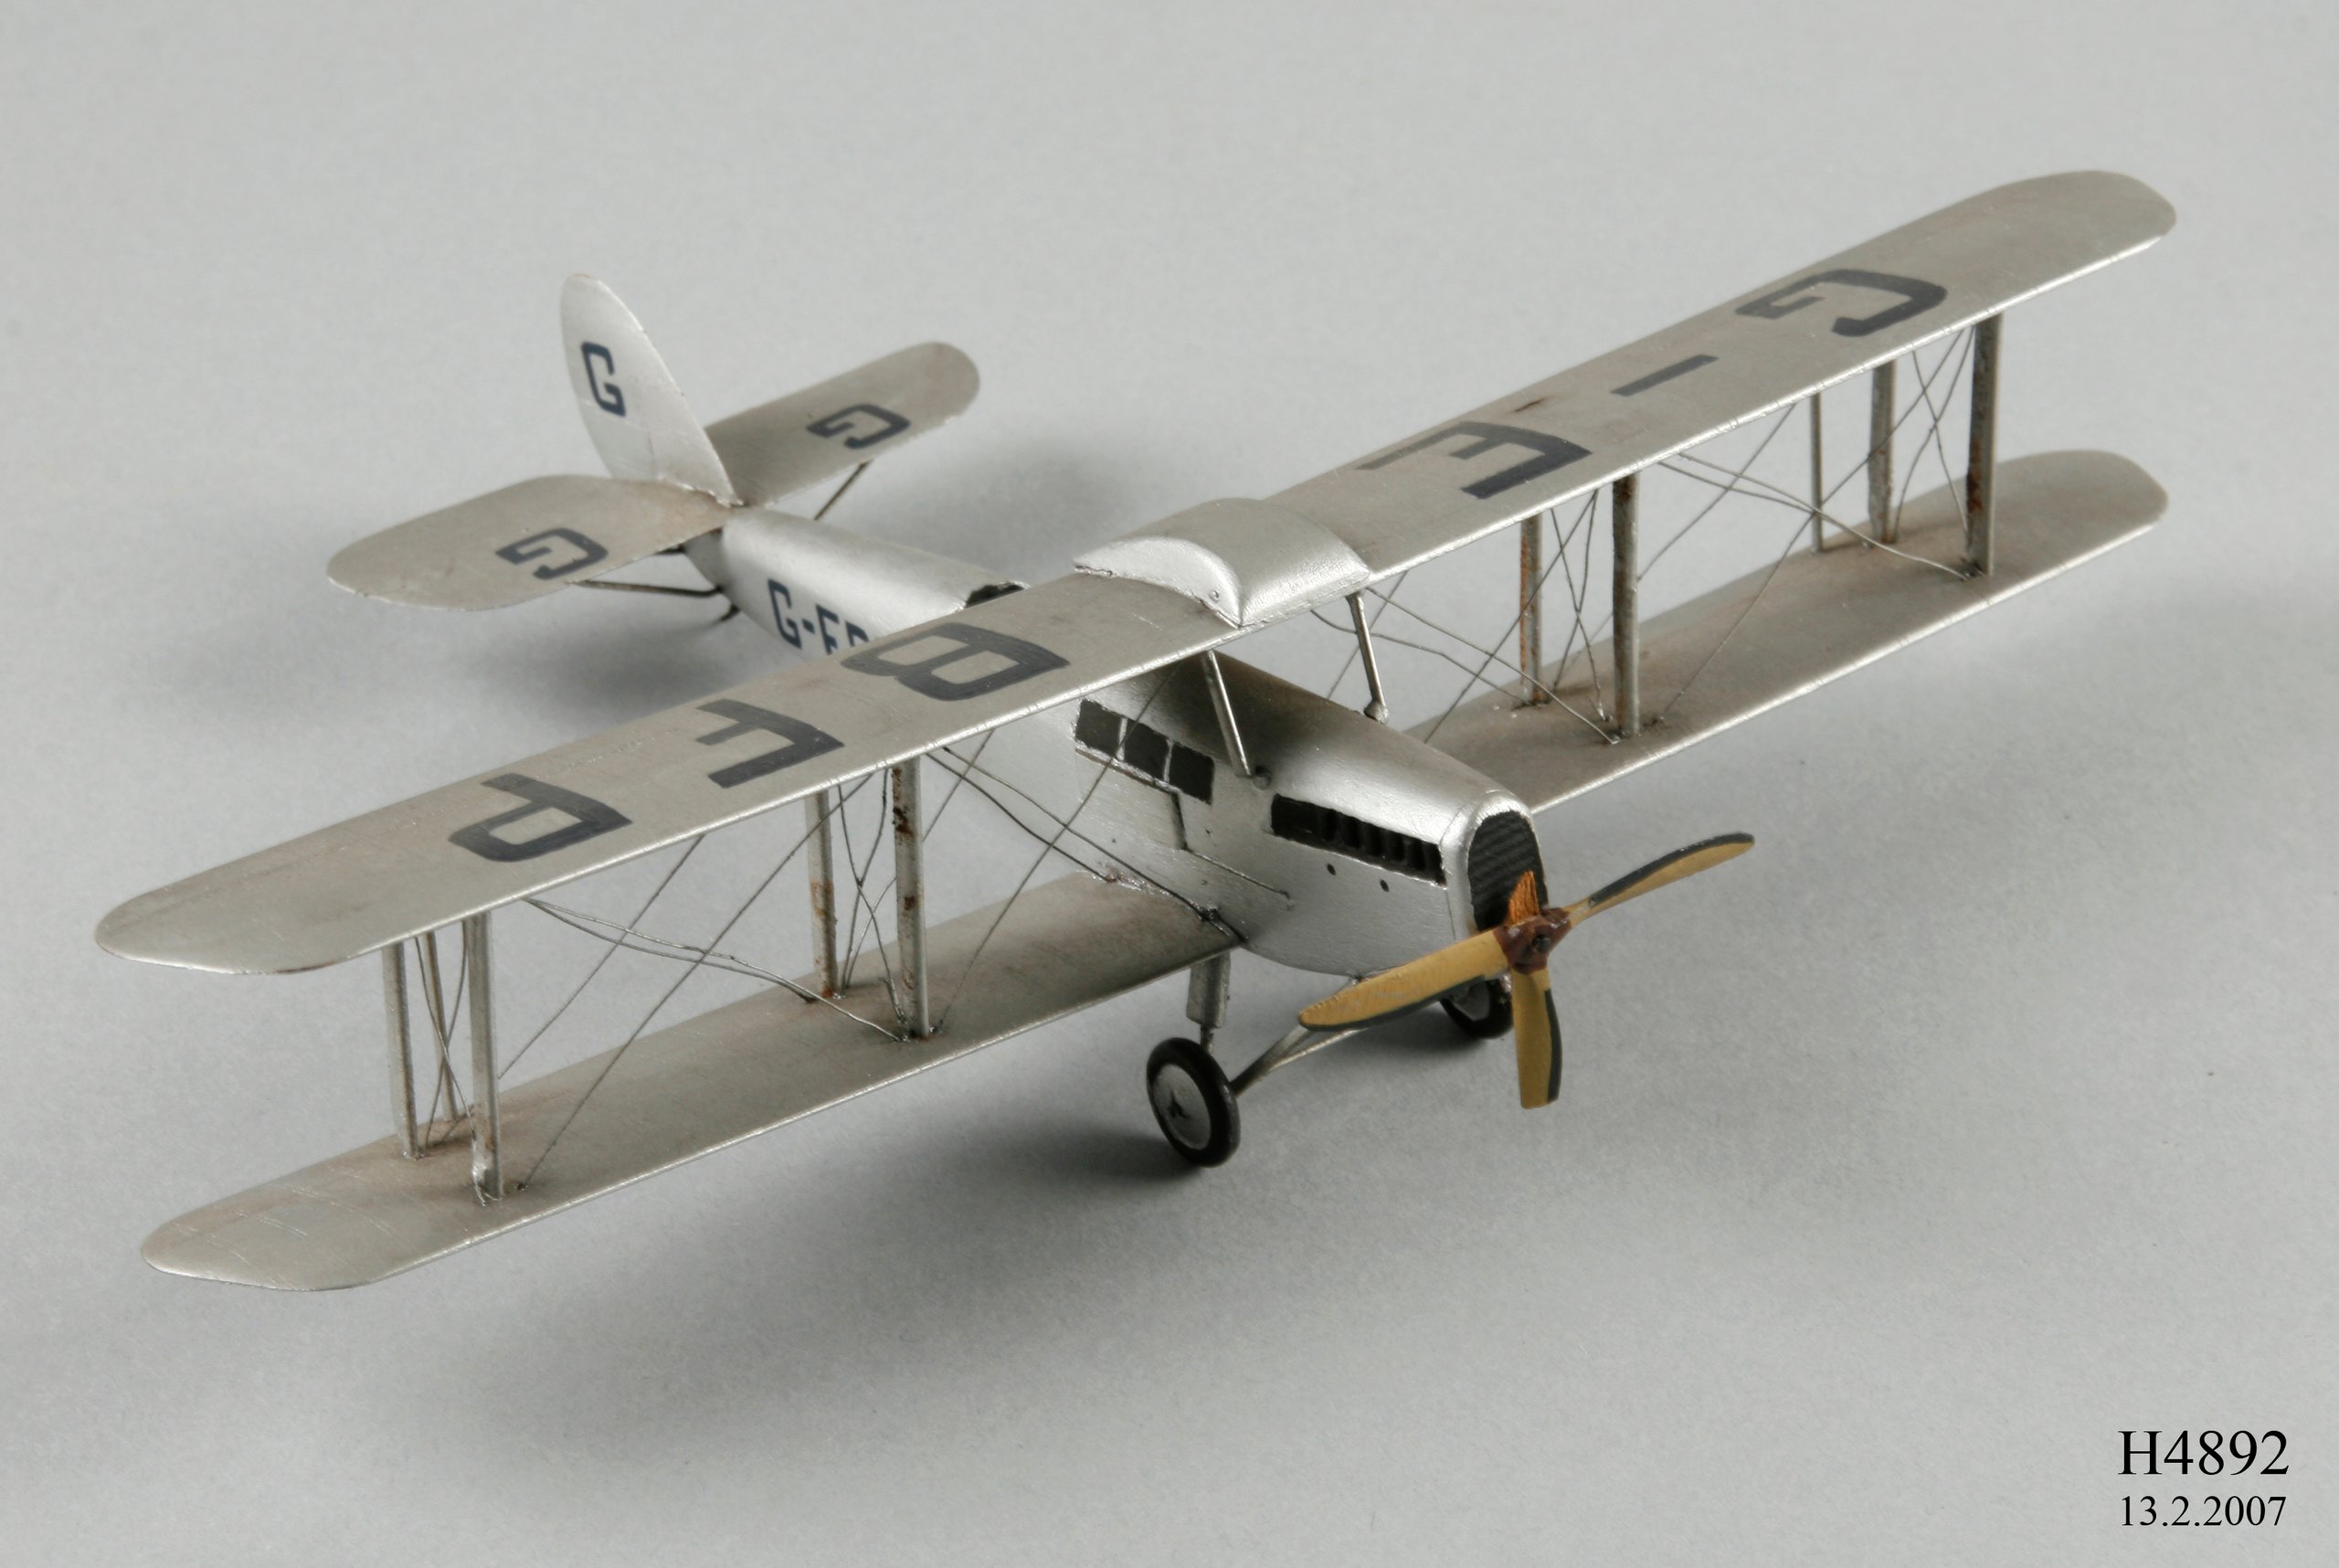 Model of the 1924 De Havilland DH50 aircraft G-EBFP